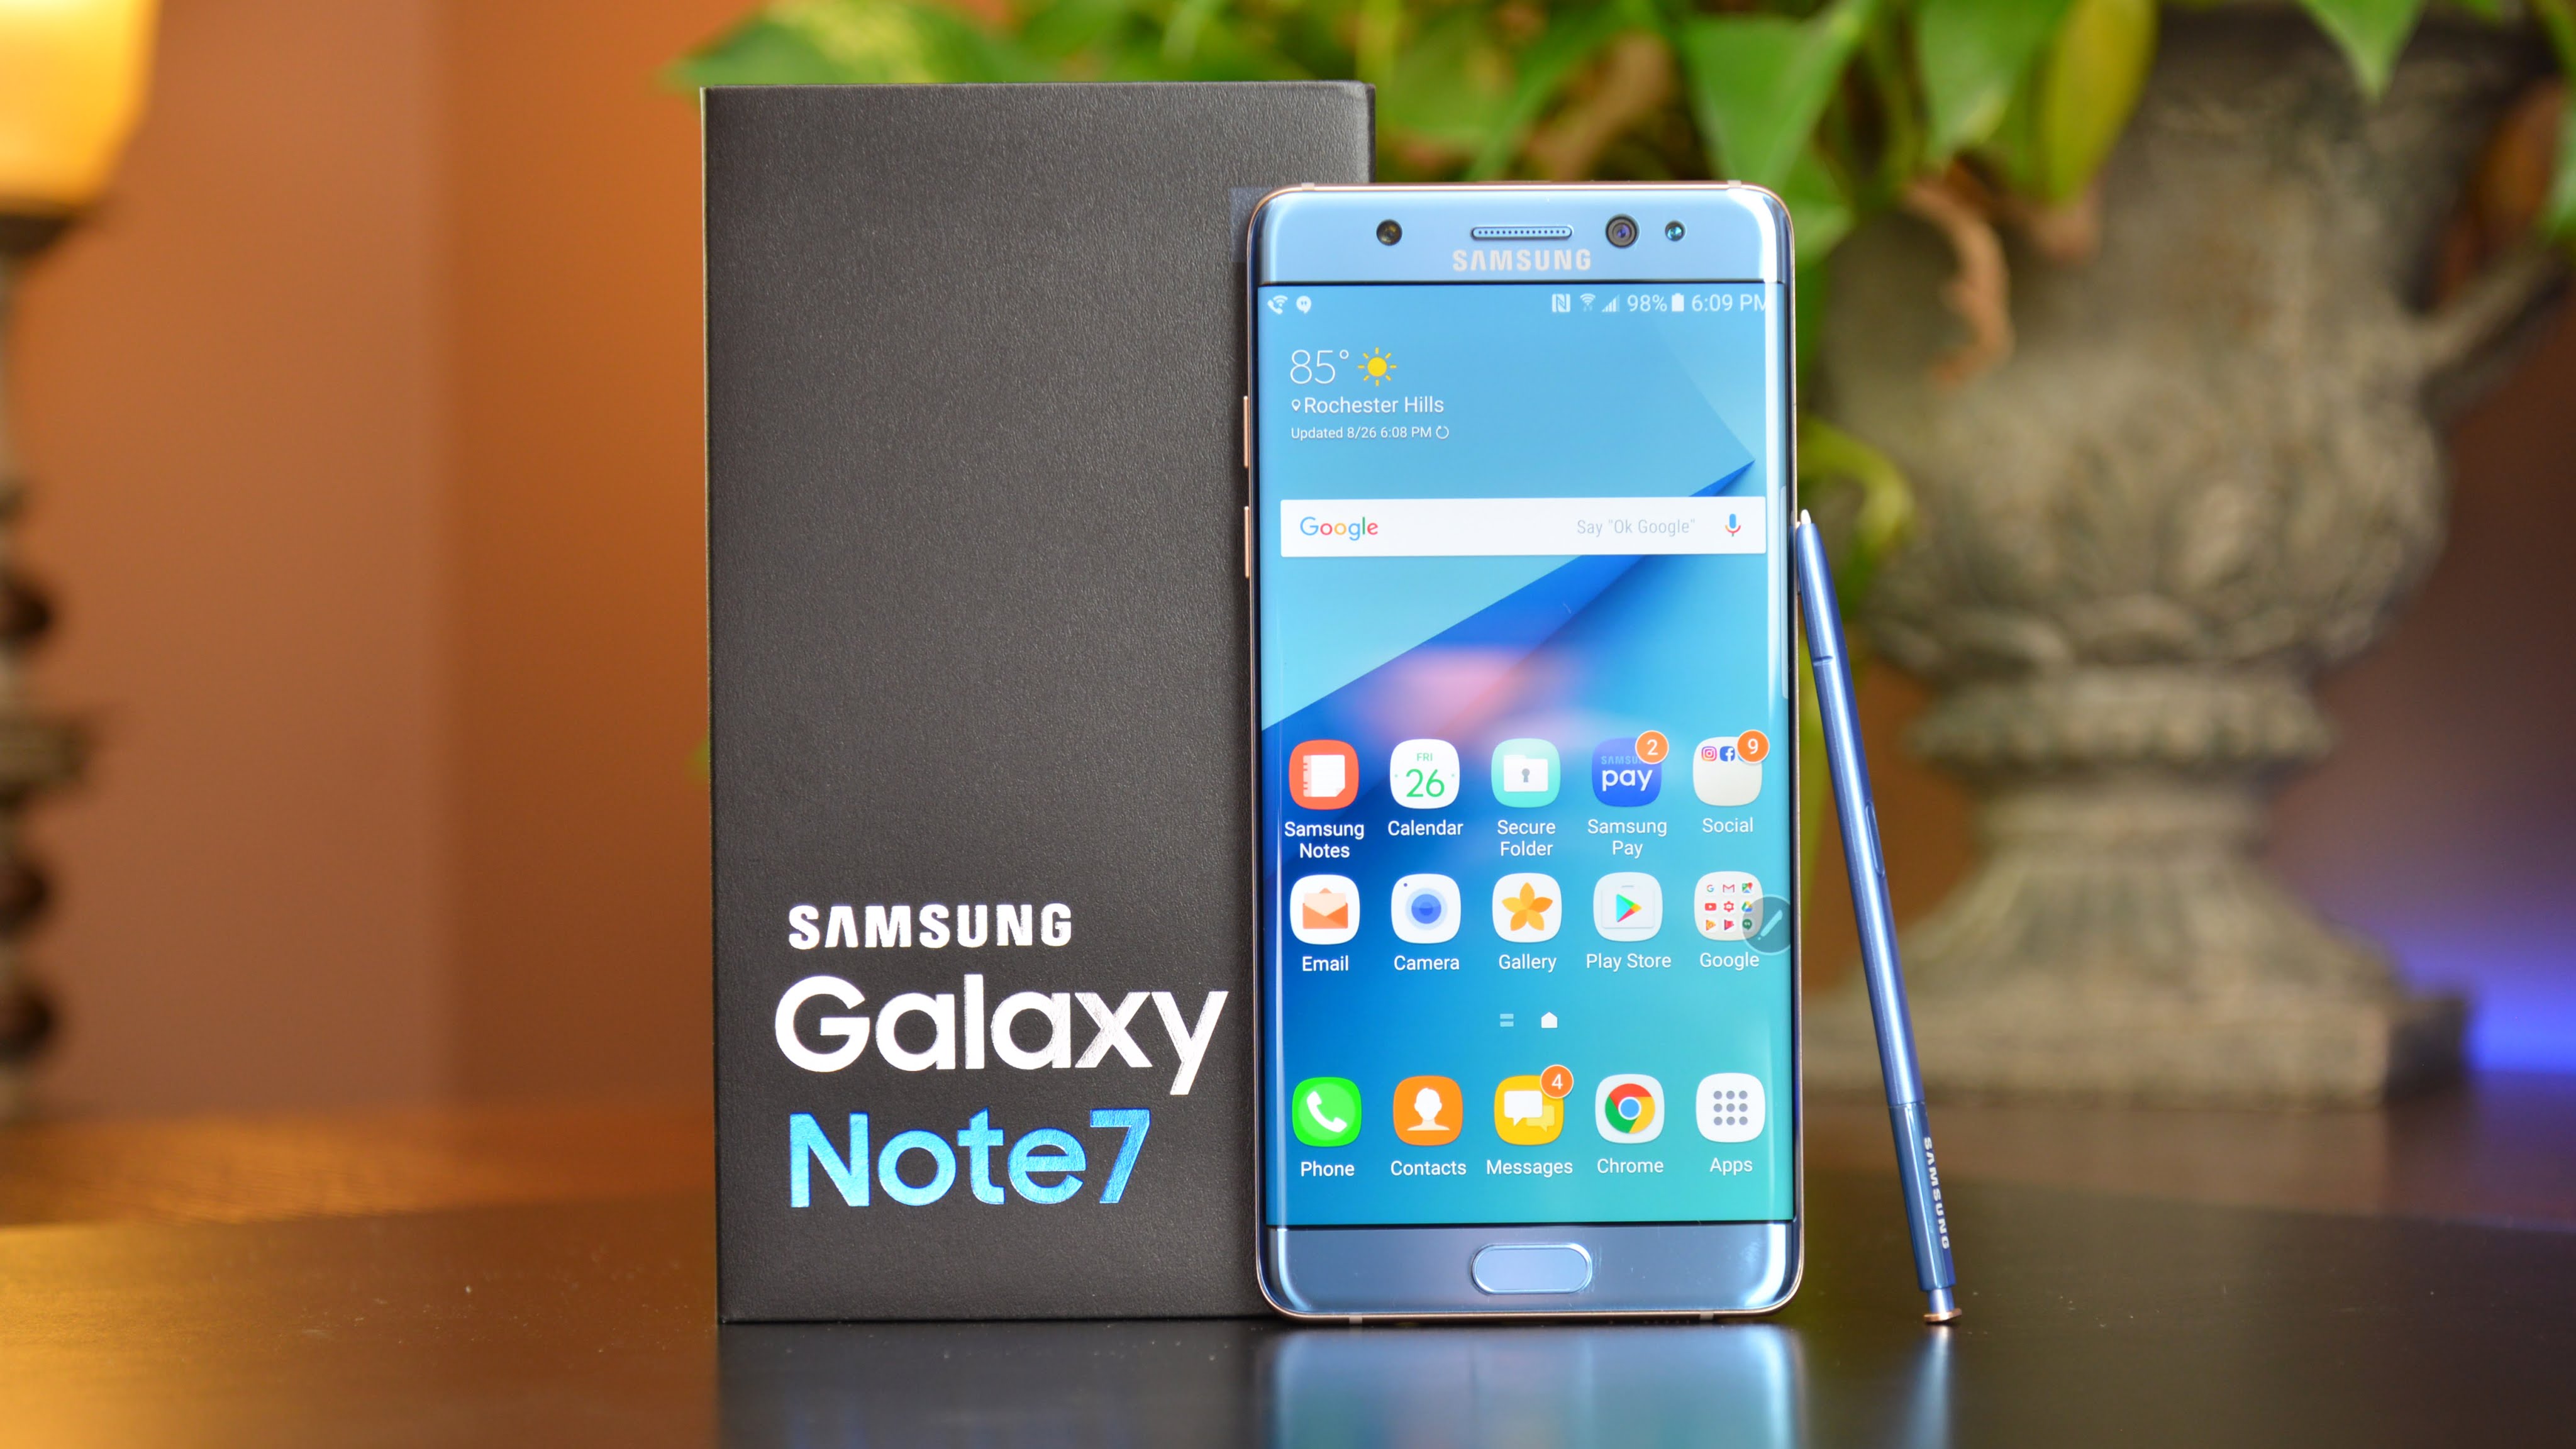 De ce explodau dispozitivele Samsung Galaxy Note 7?